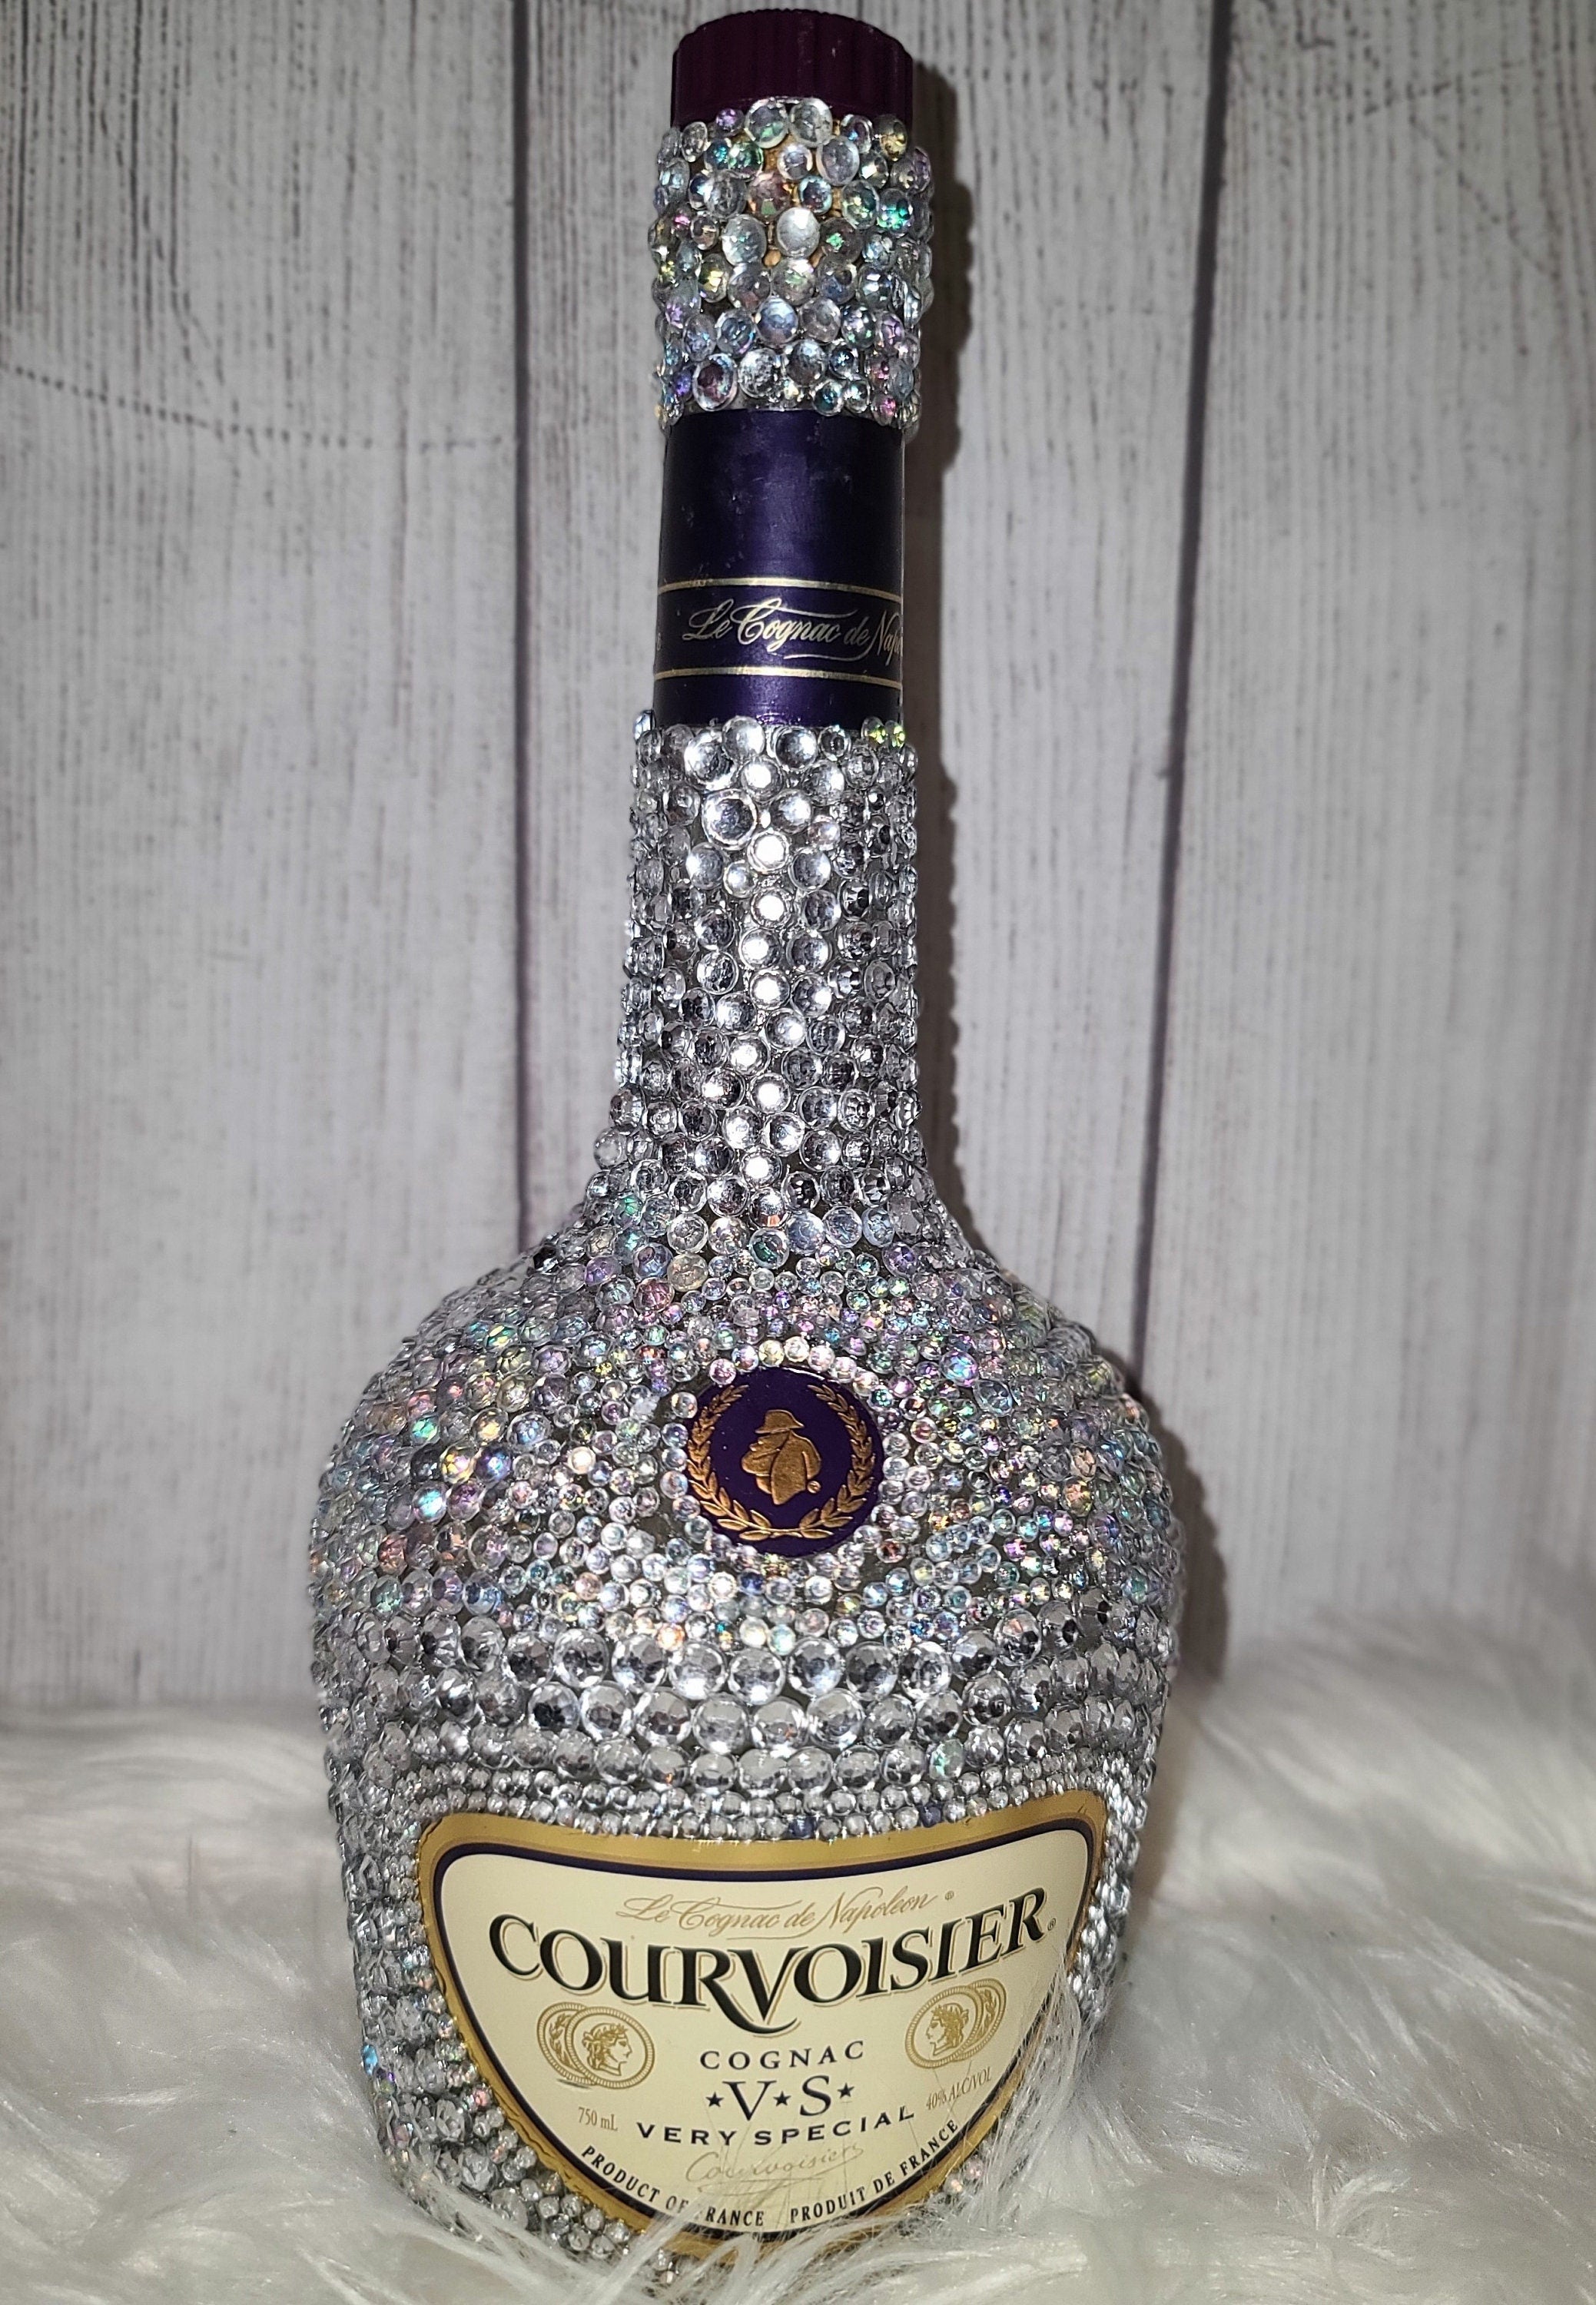 Courvoisier Cognac Bedazzled Bling Liquor Bottle - Party Decor - Blinged Out